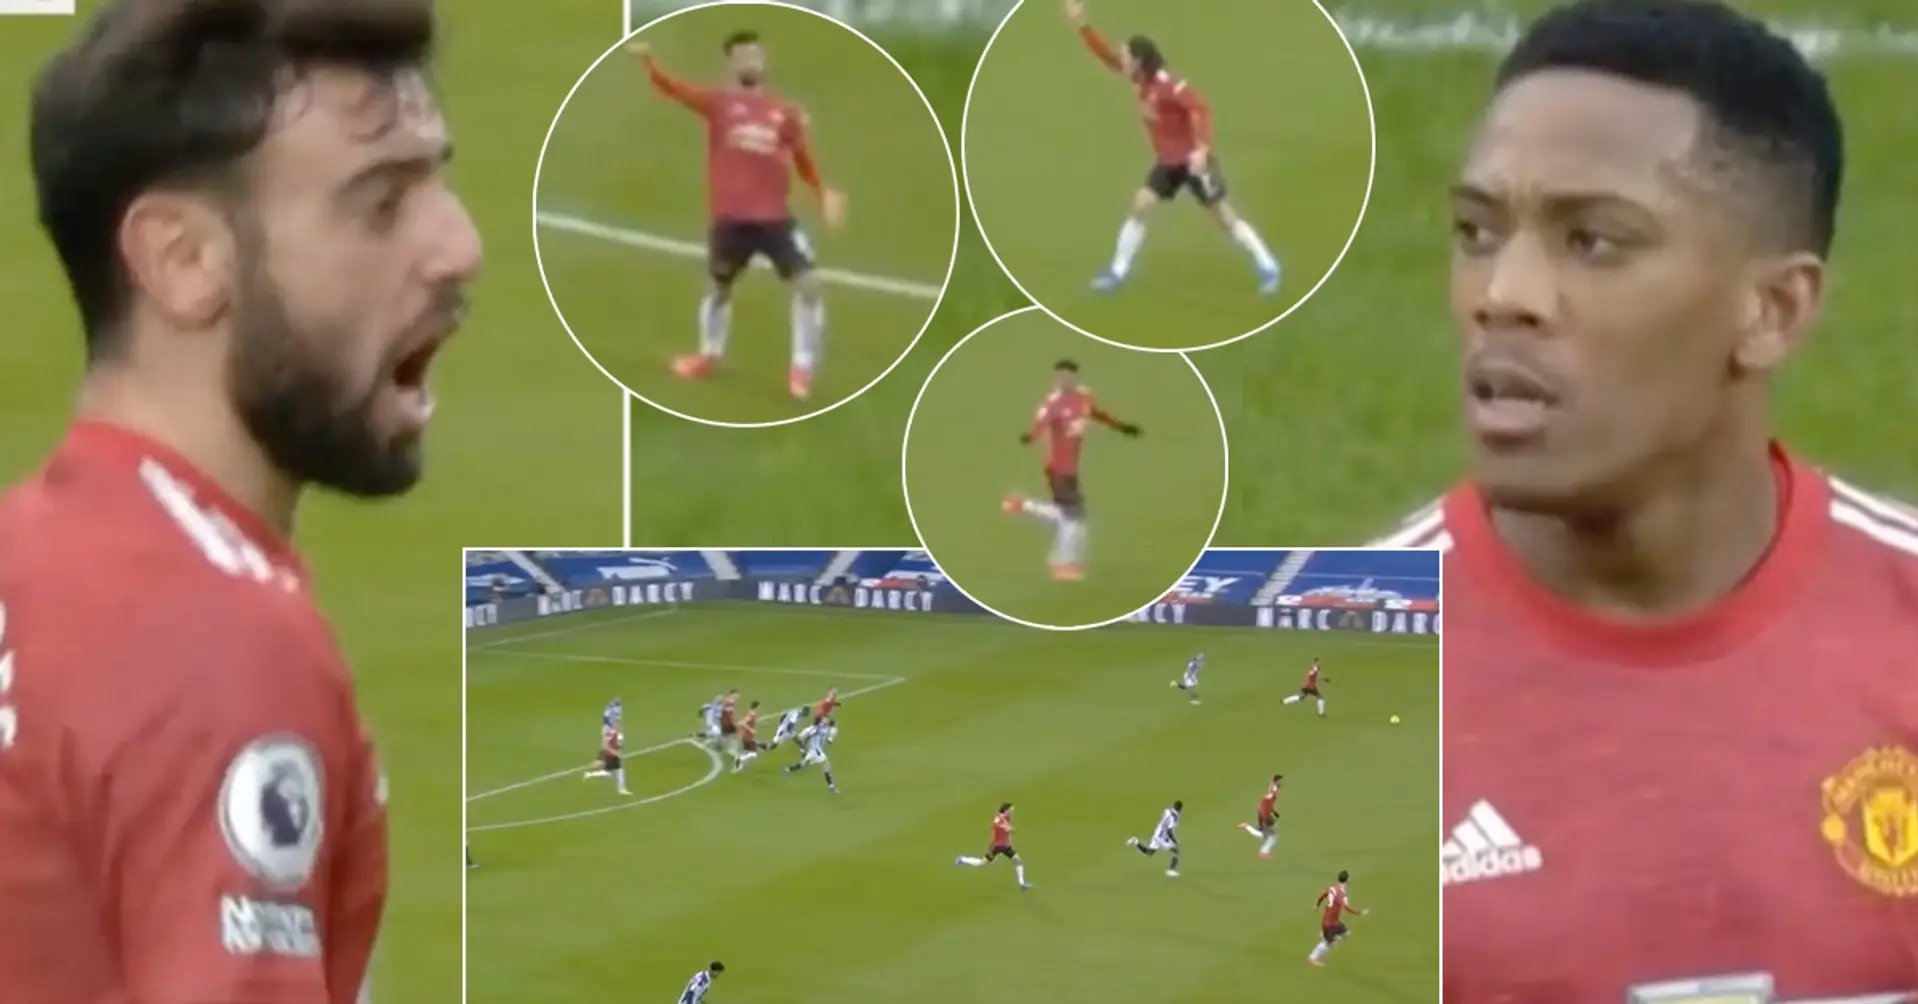 'No es un error': árbitro finaliza la primera parte durante el contraataque con 3 jugadores del Man United libres frente al portero